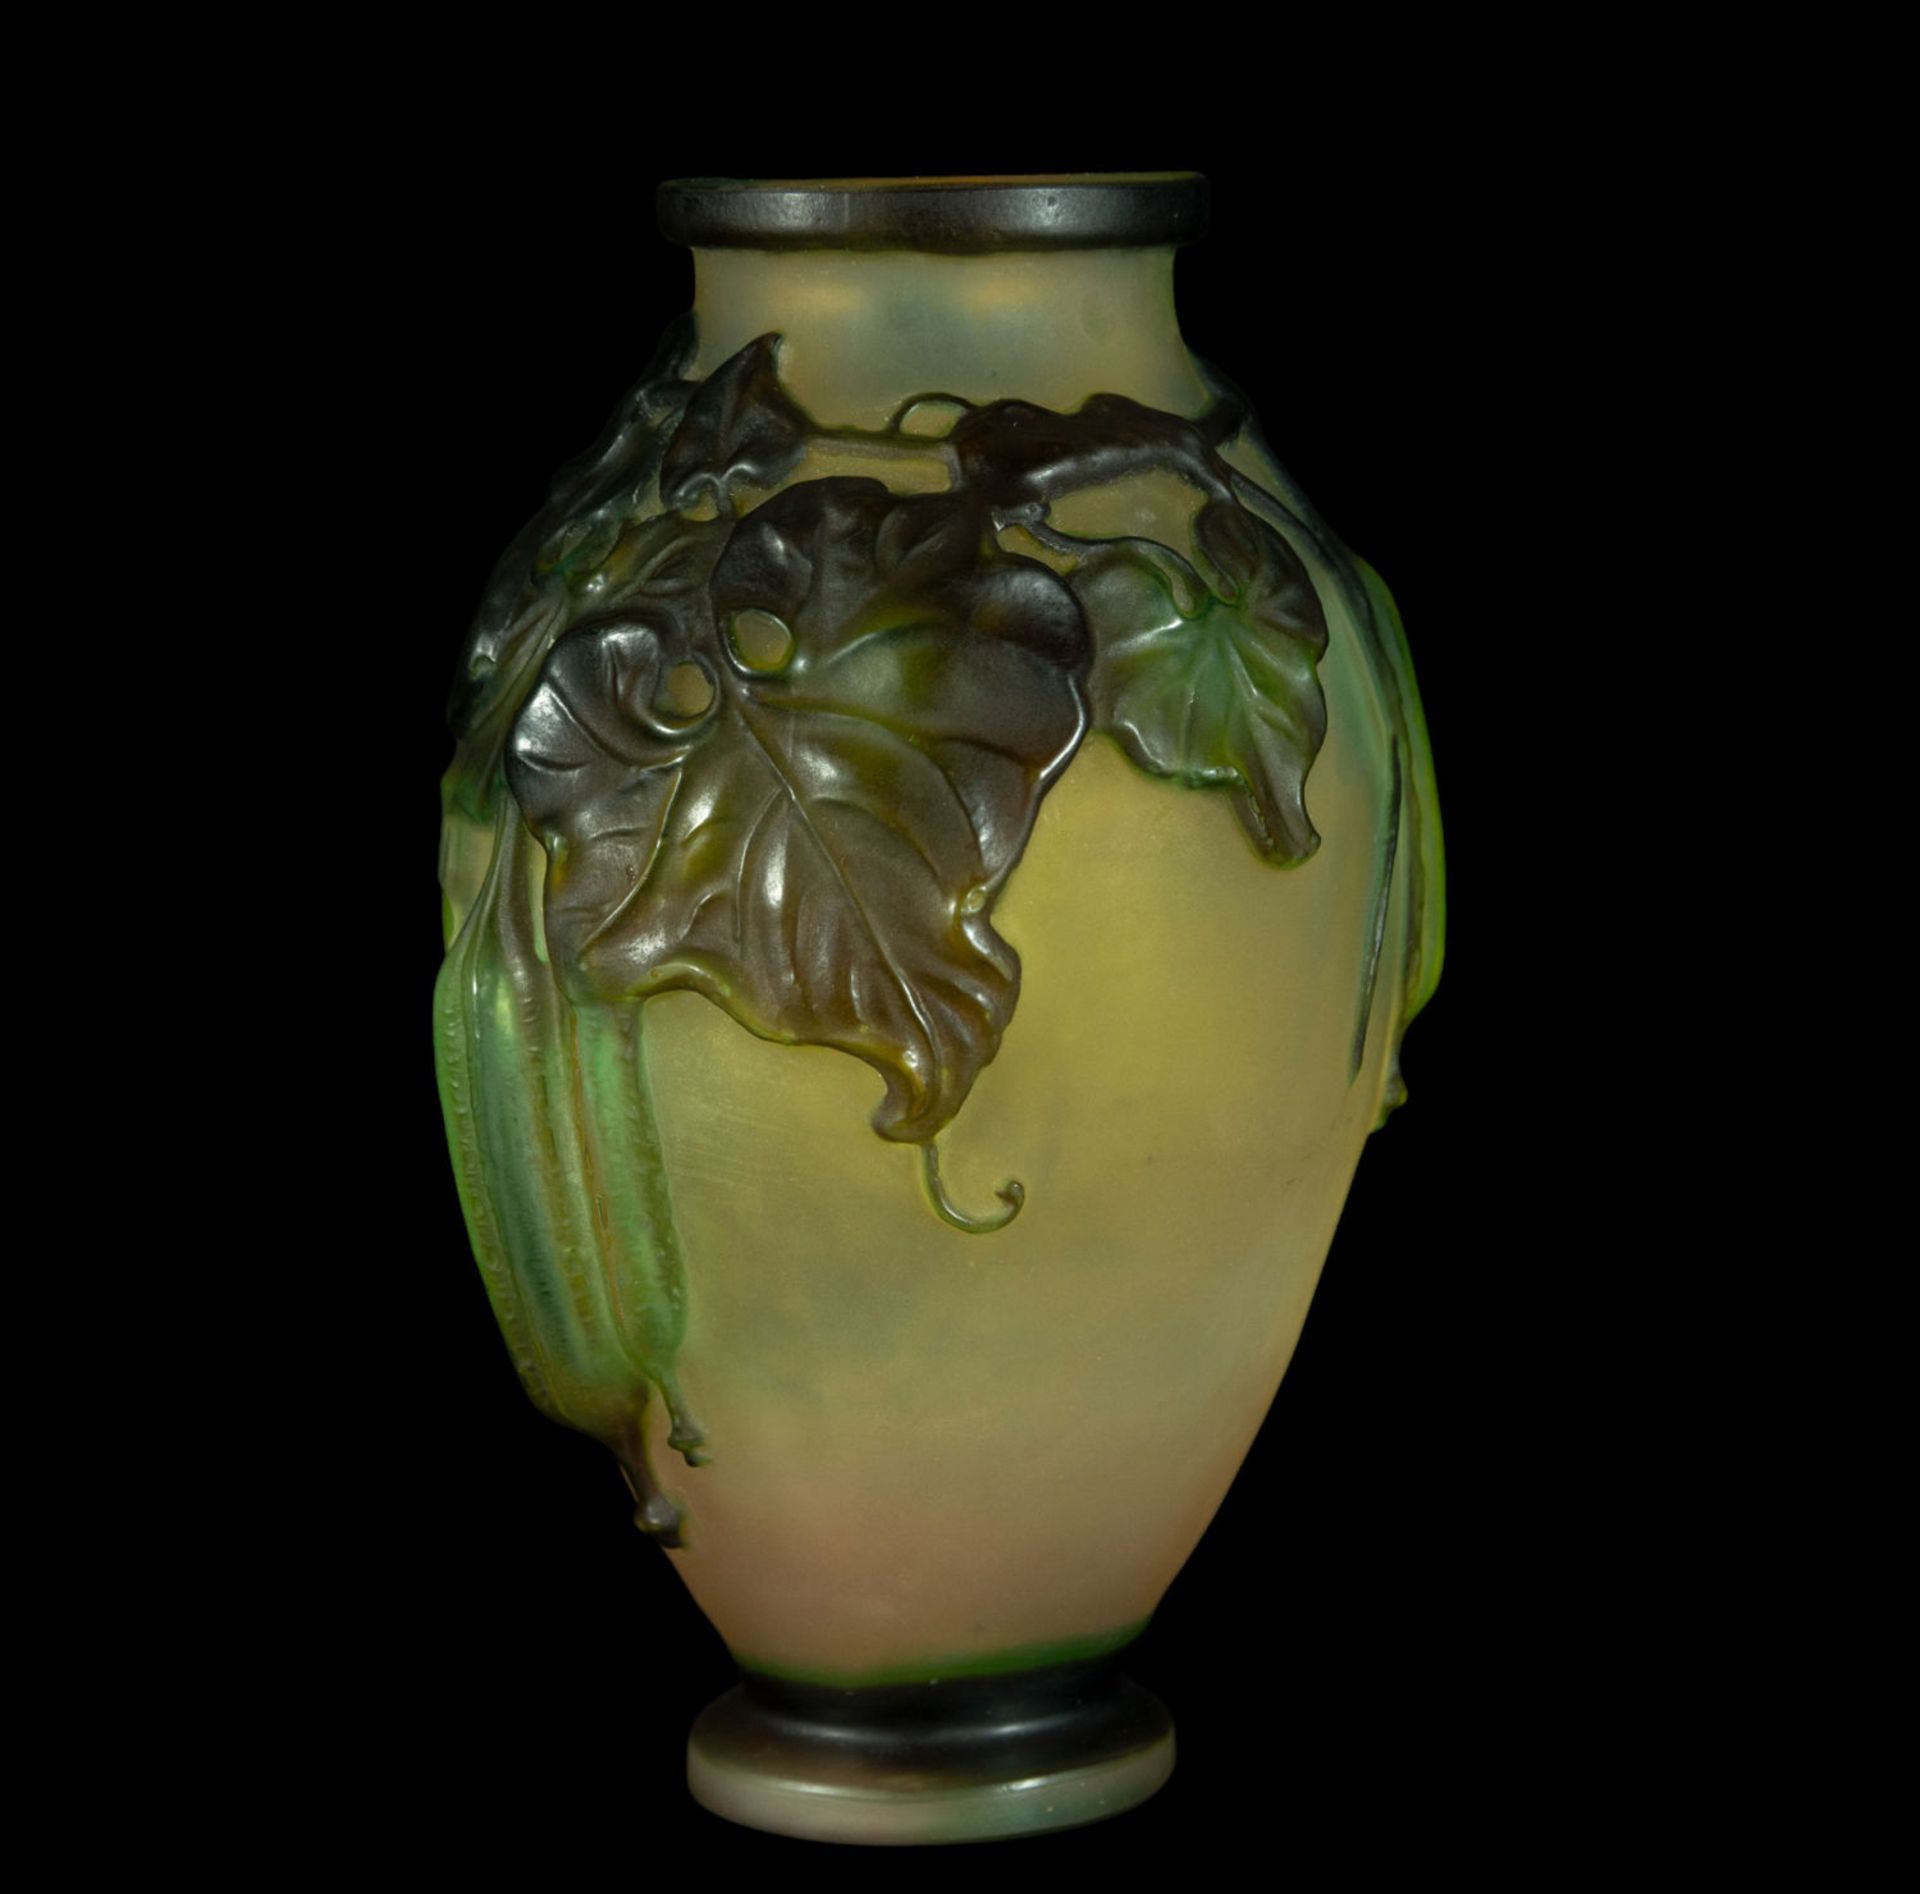 Exquisite Art Nouveau Gallé vase in blown glass and polychrome vitreous paste, 1900s - 1920s - Bild 2 aus 5